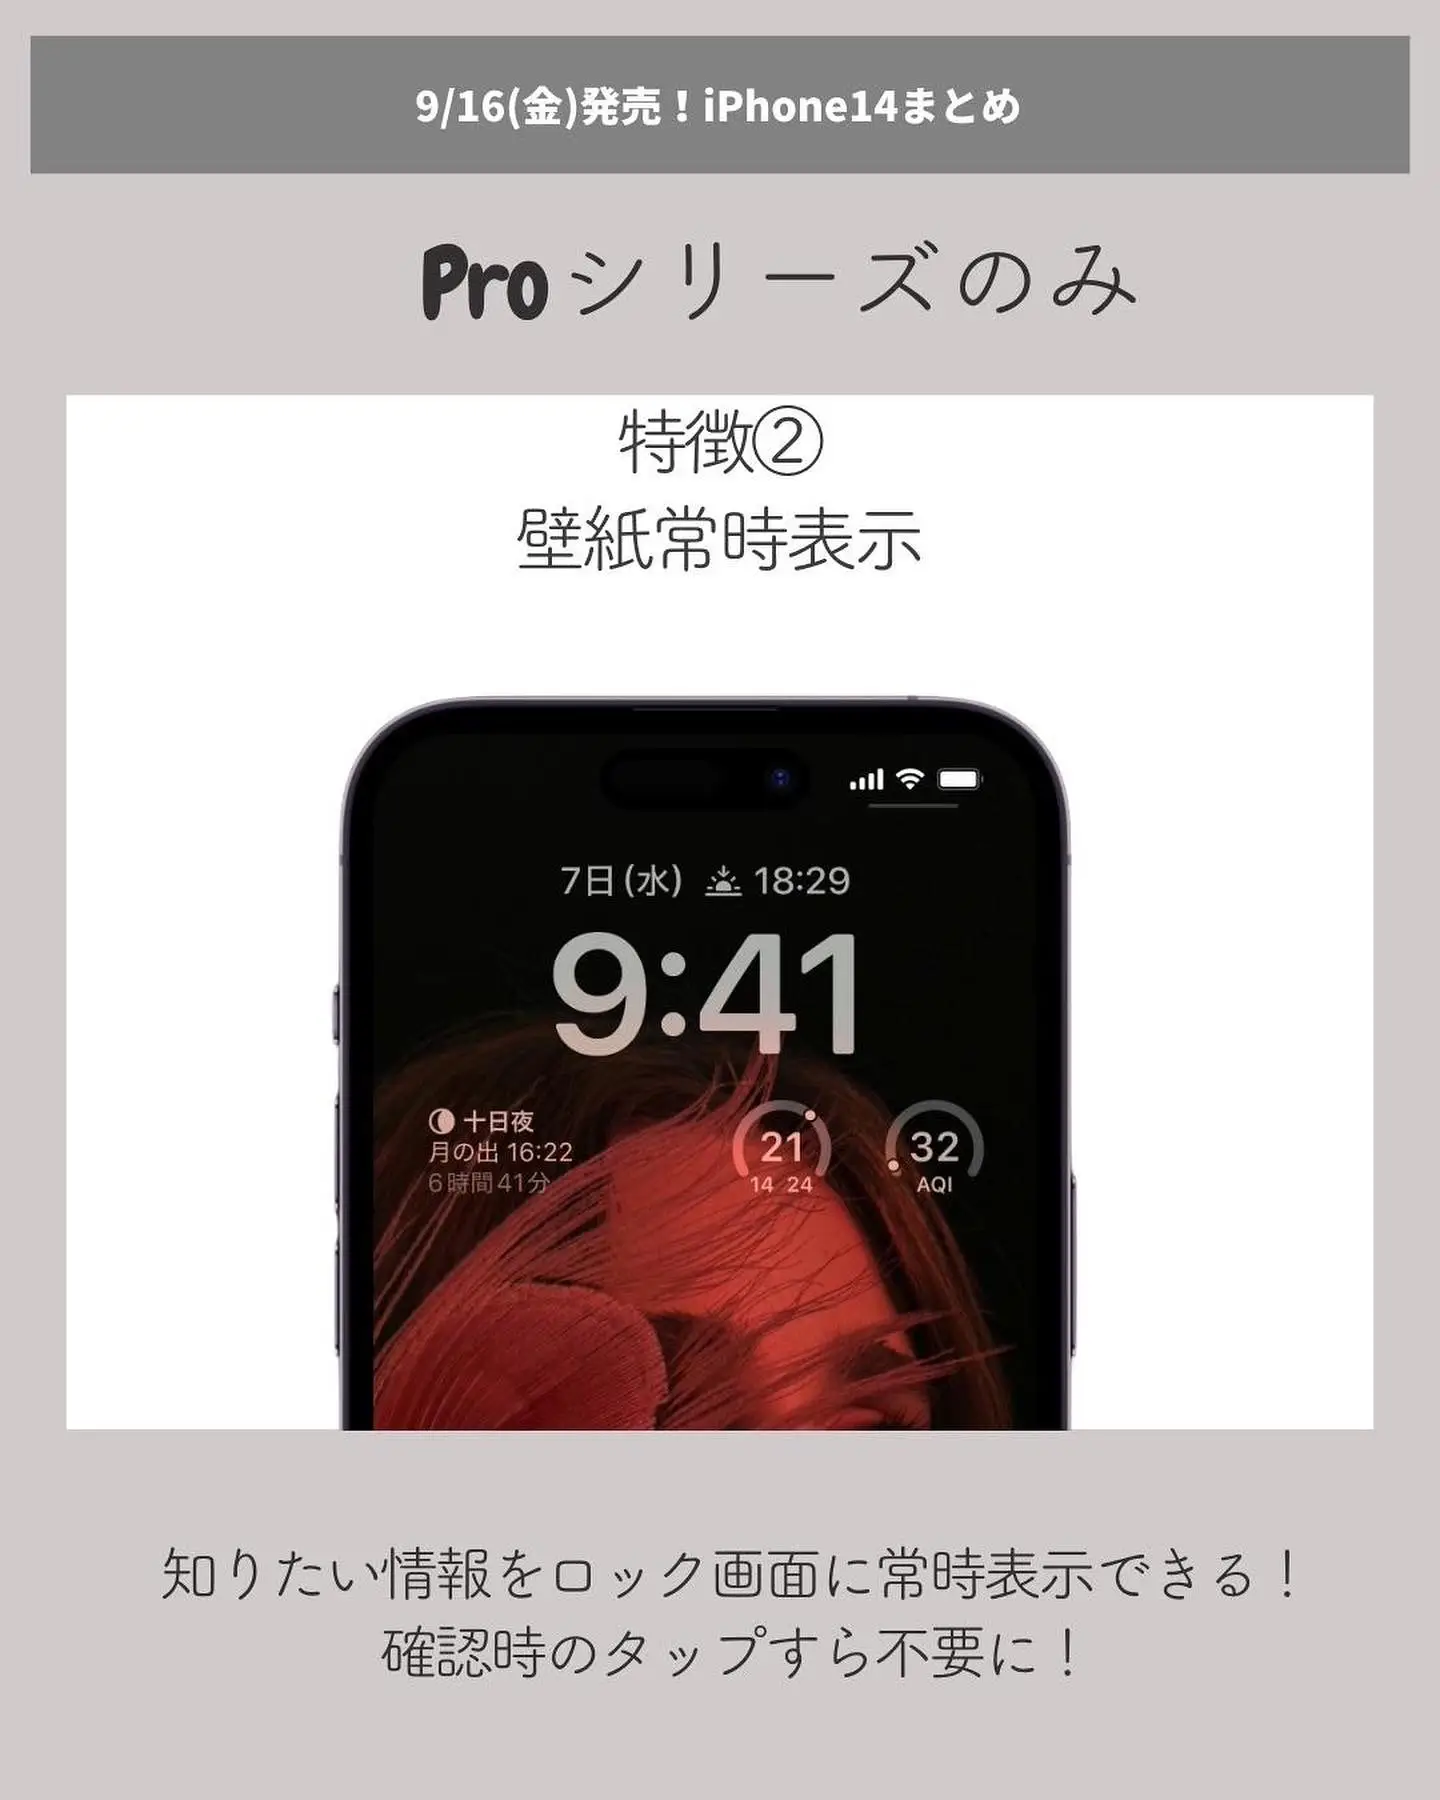 Iphone14 人気色 - Lemon8検索